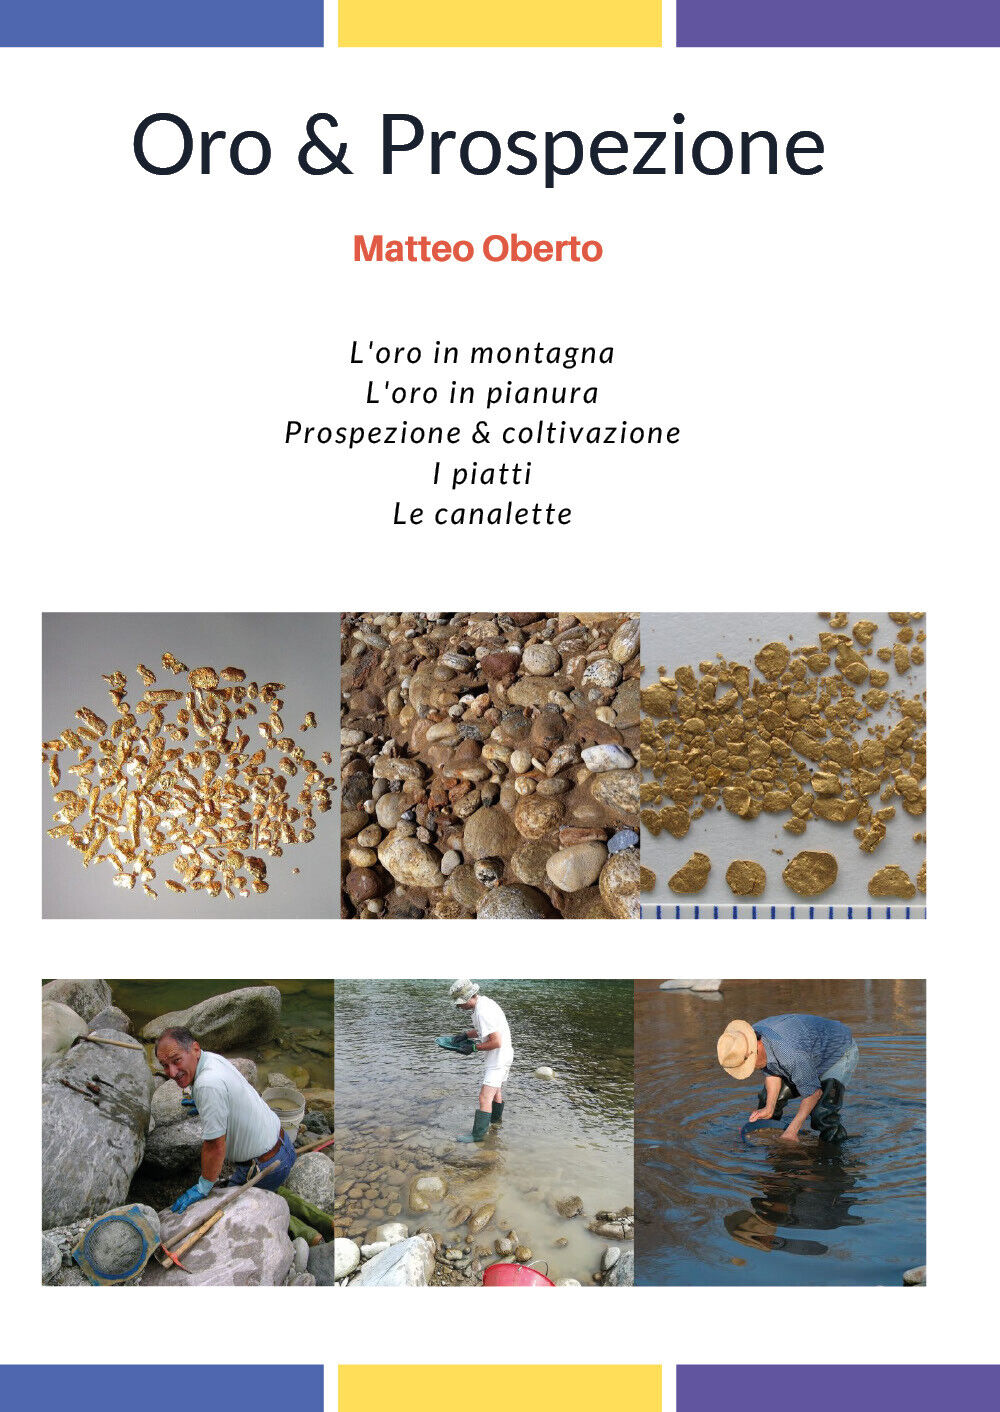 Oro & prospezione - Matteo Oberto,  2018,  Youcanprint